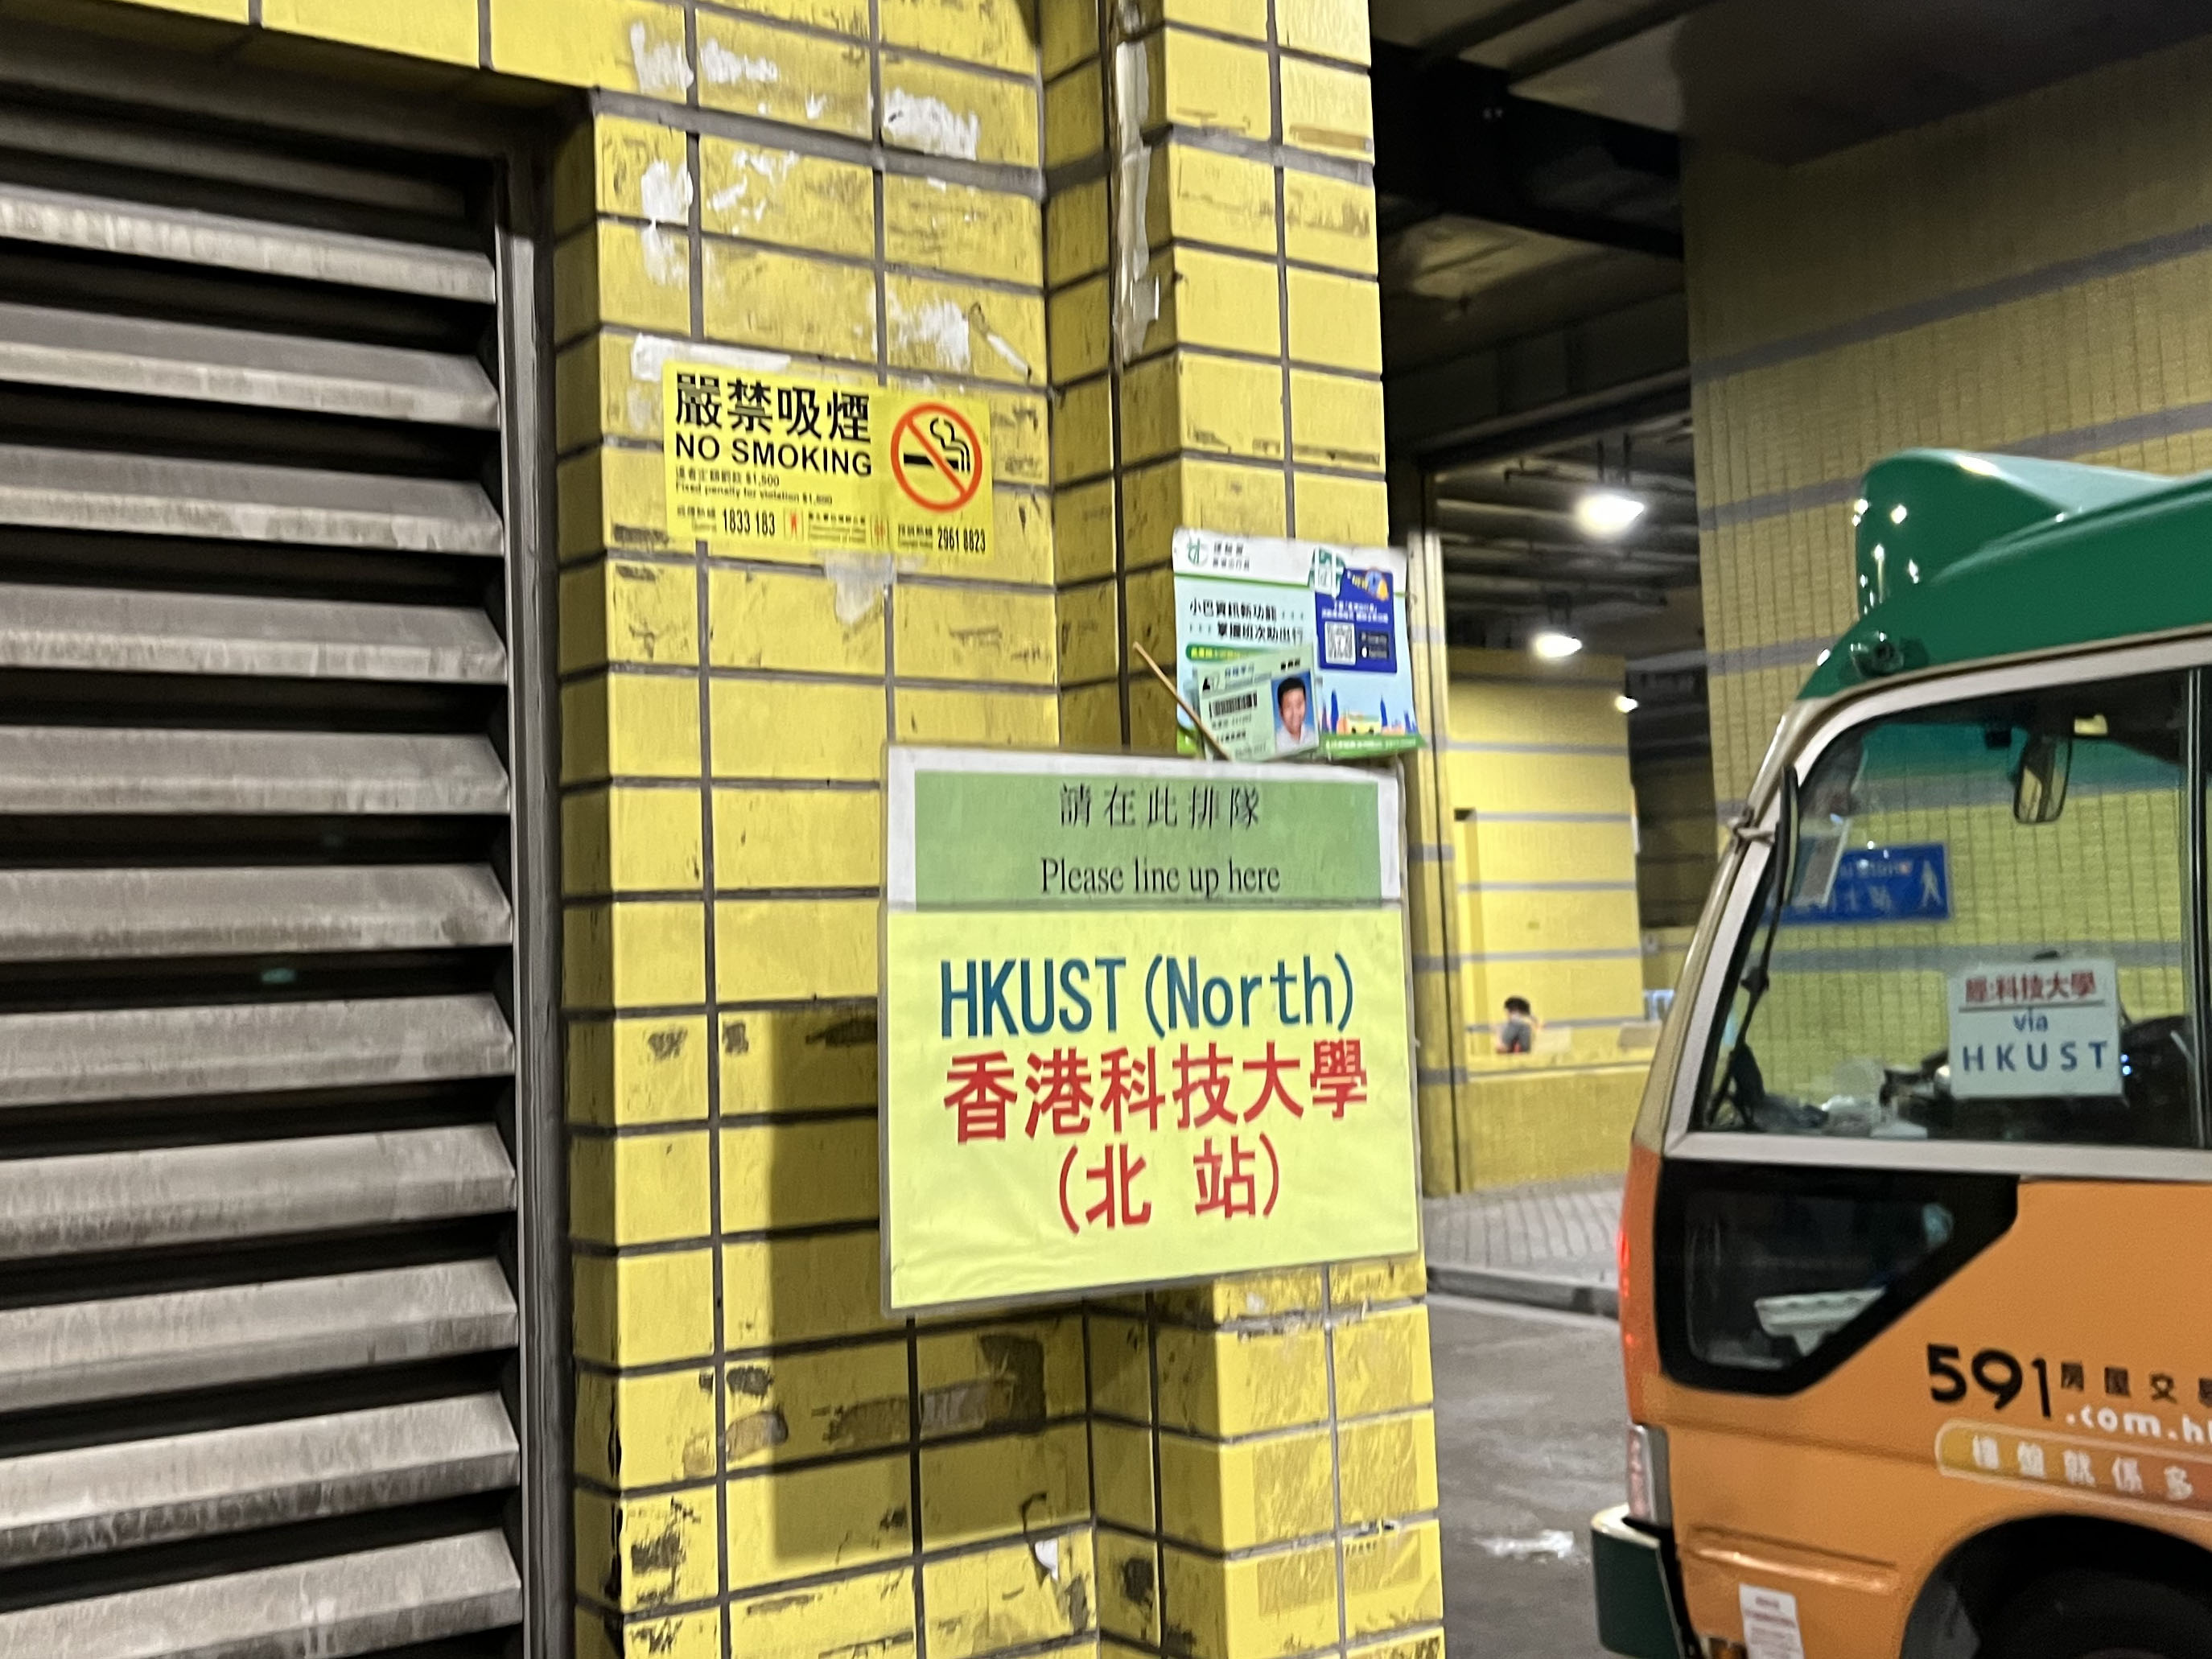 小巴车站“经：科技大学 (via HKUST)”人性化标志